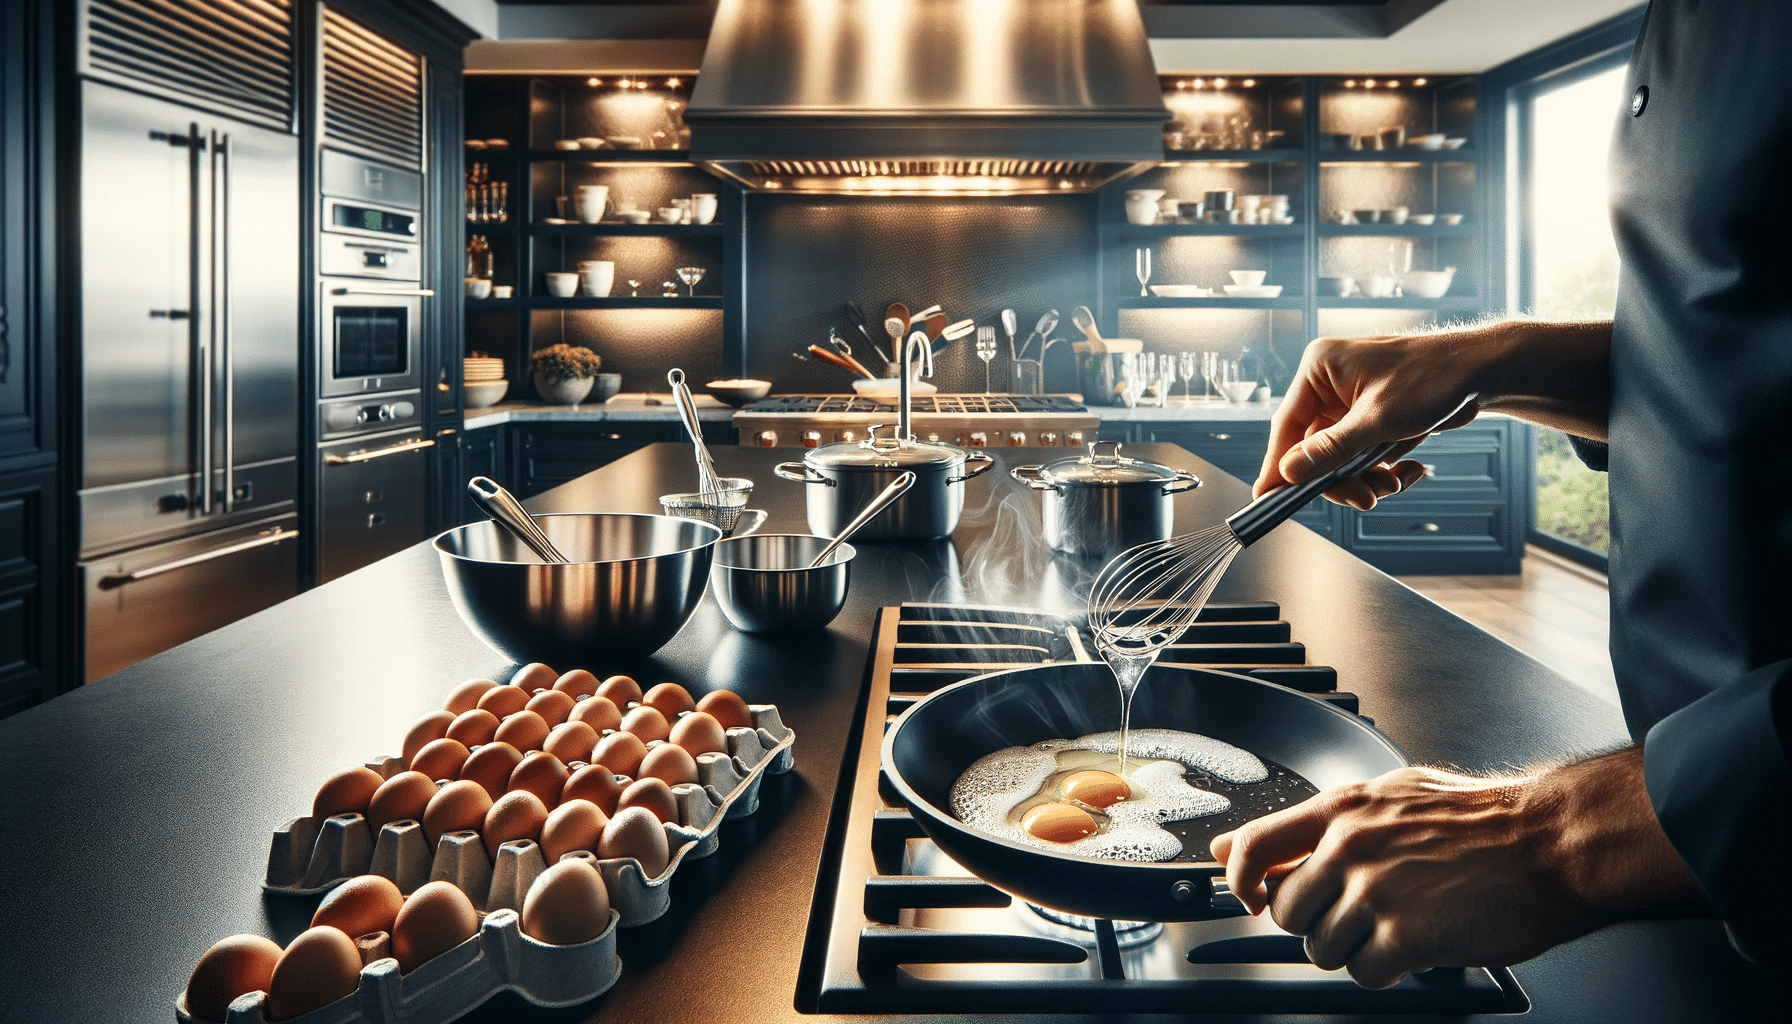 Cozinha gourmet moderna com foco em uma ilha de cozinha, onde um chef está quebrando ovos em uma frigideira sobre um fogão. A cozinha é equipada com eletrodomésticos de aço inoxidável e bancadas de granito polido.